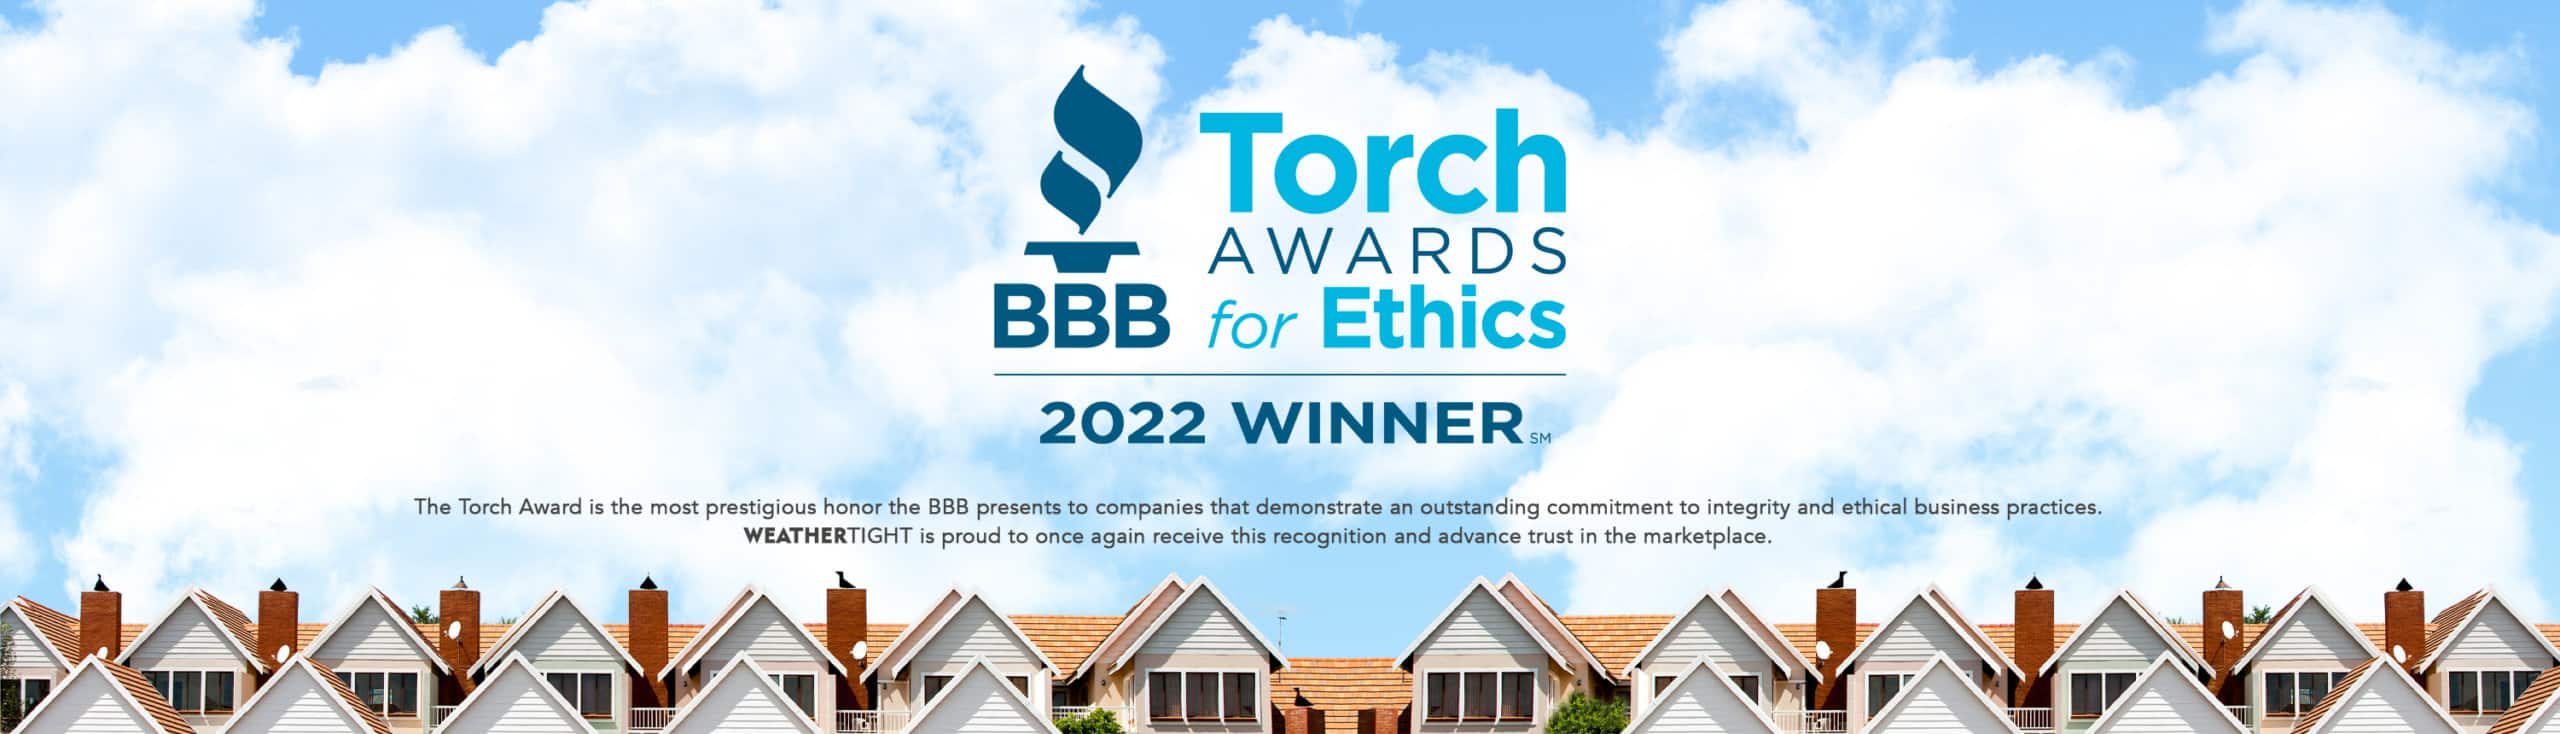 2022 BBB Torch Award For Ethics Winner